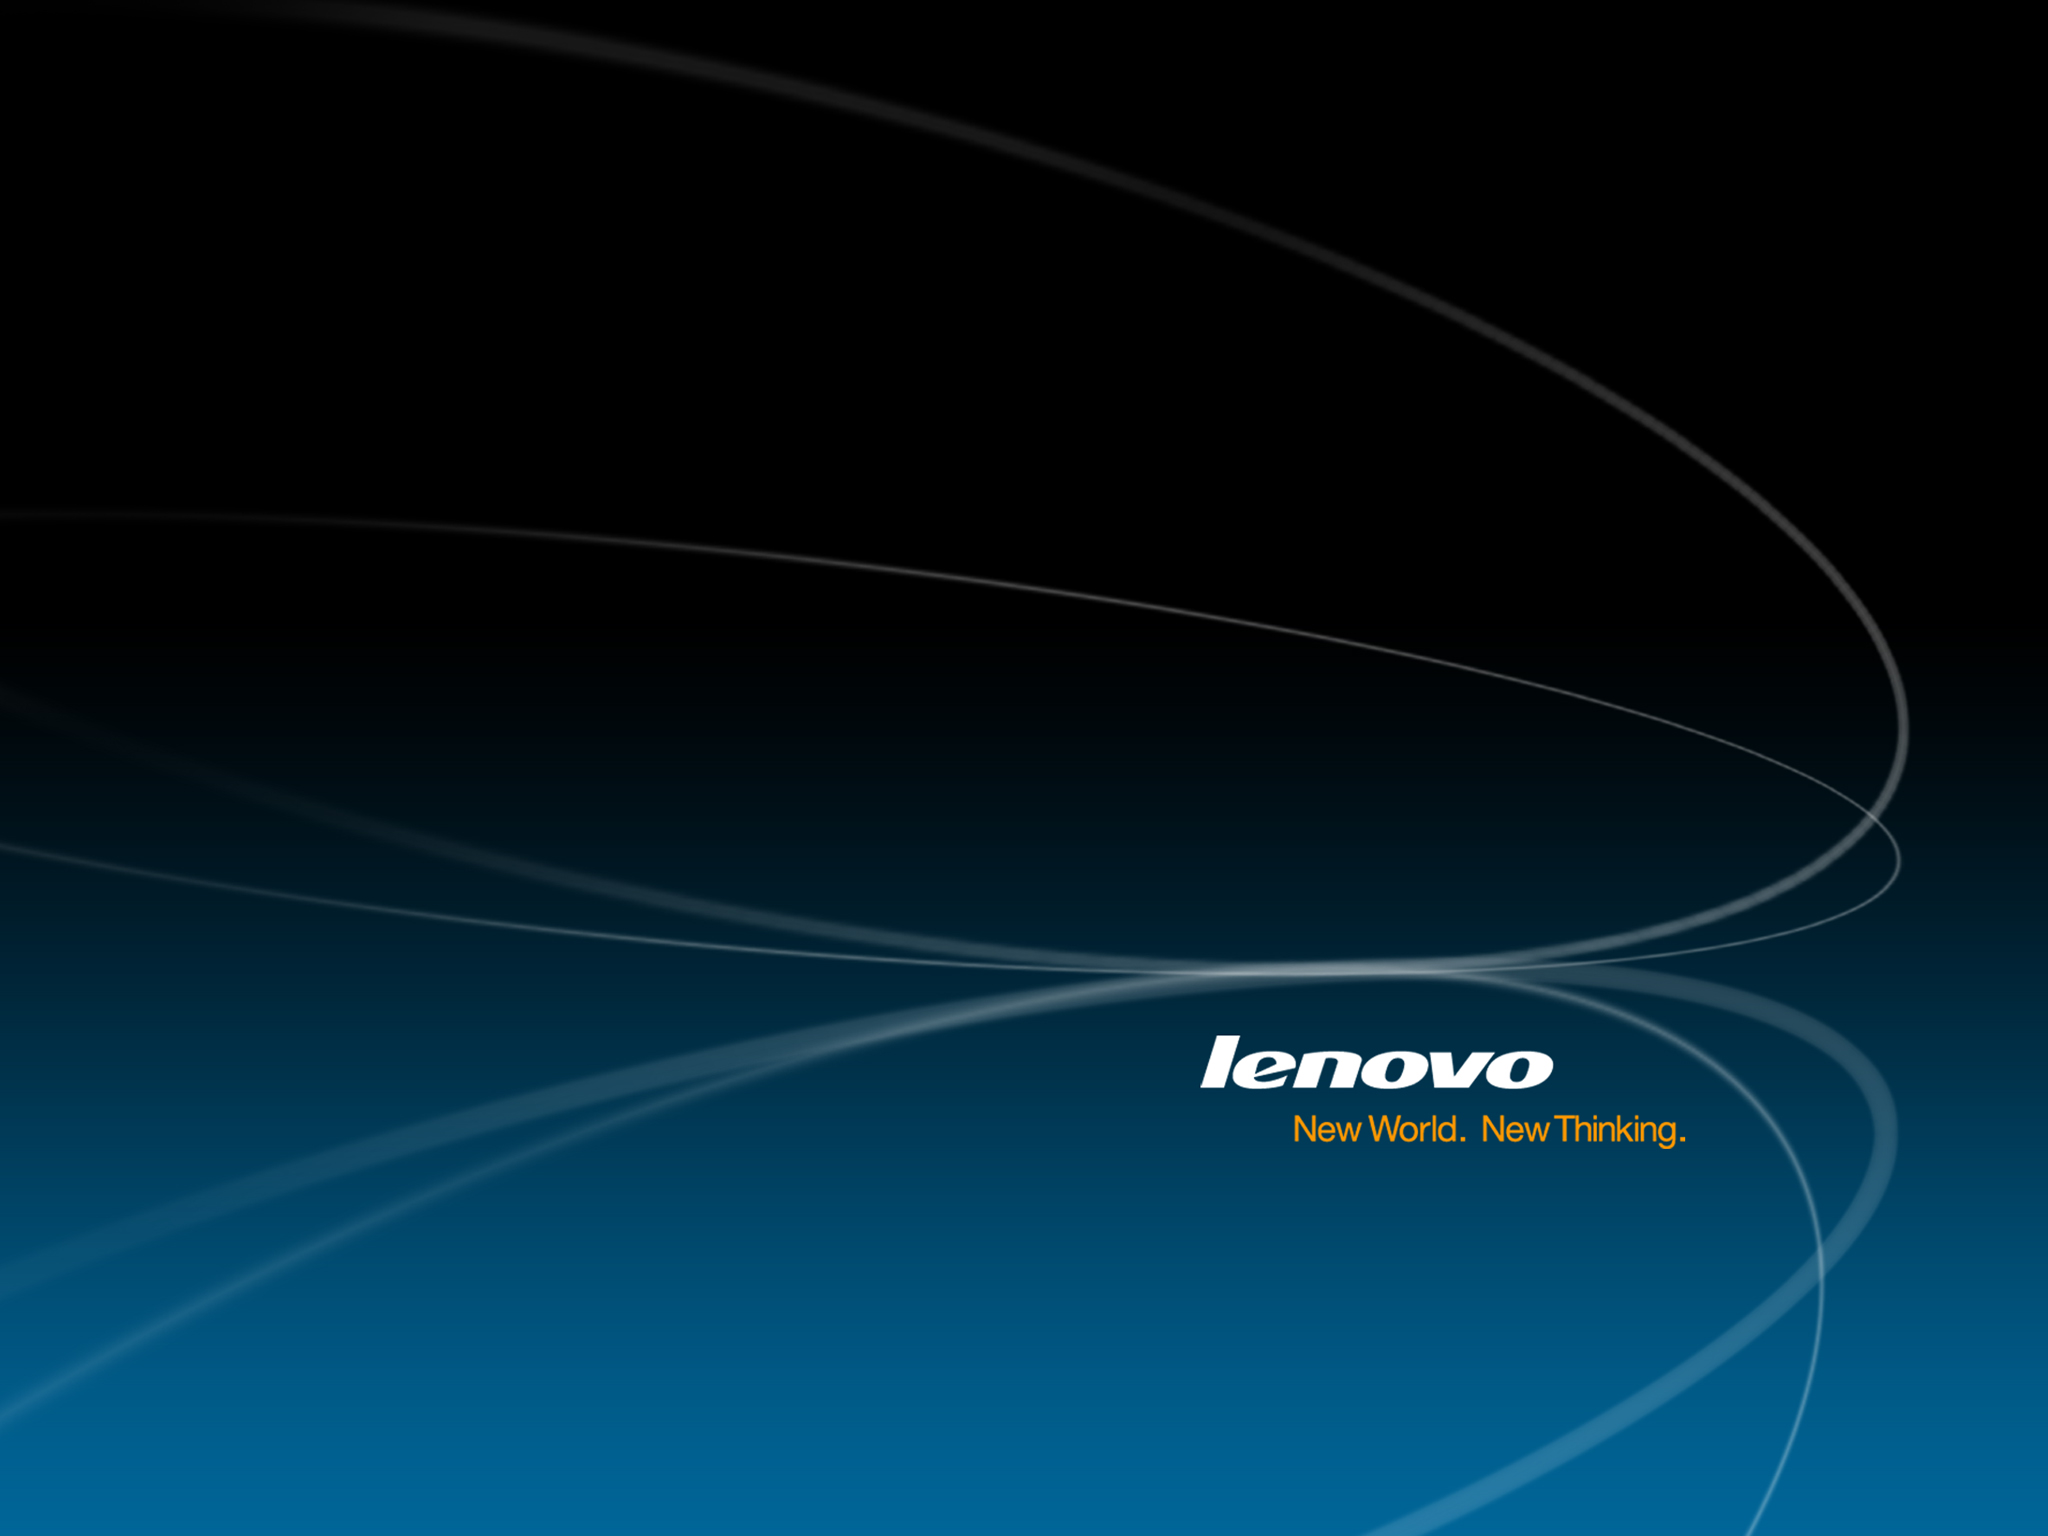 Lenovo Official Wallpaper